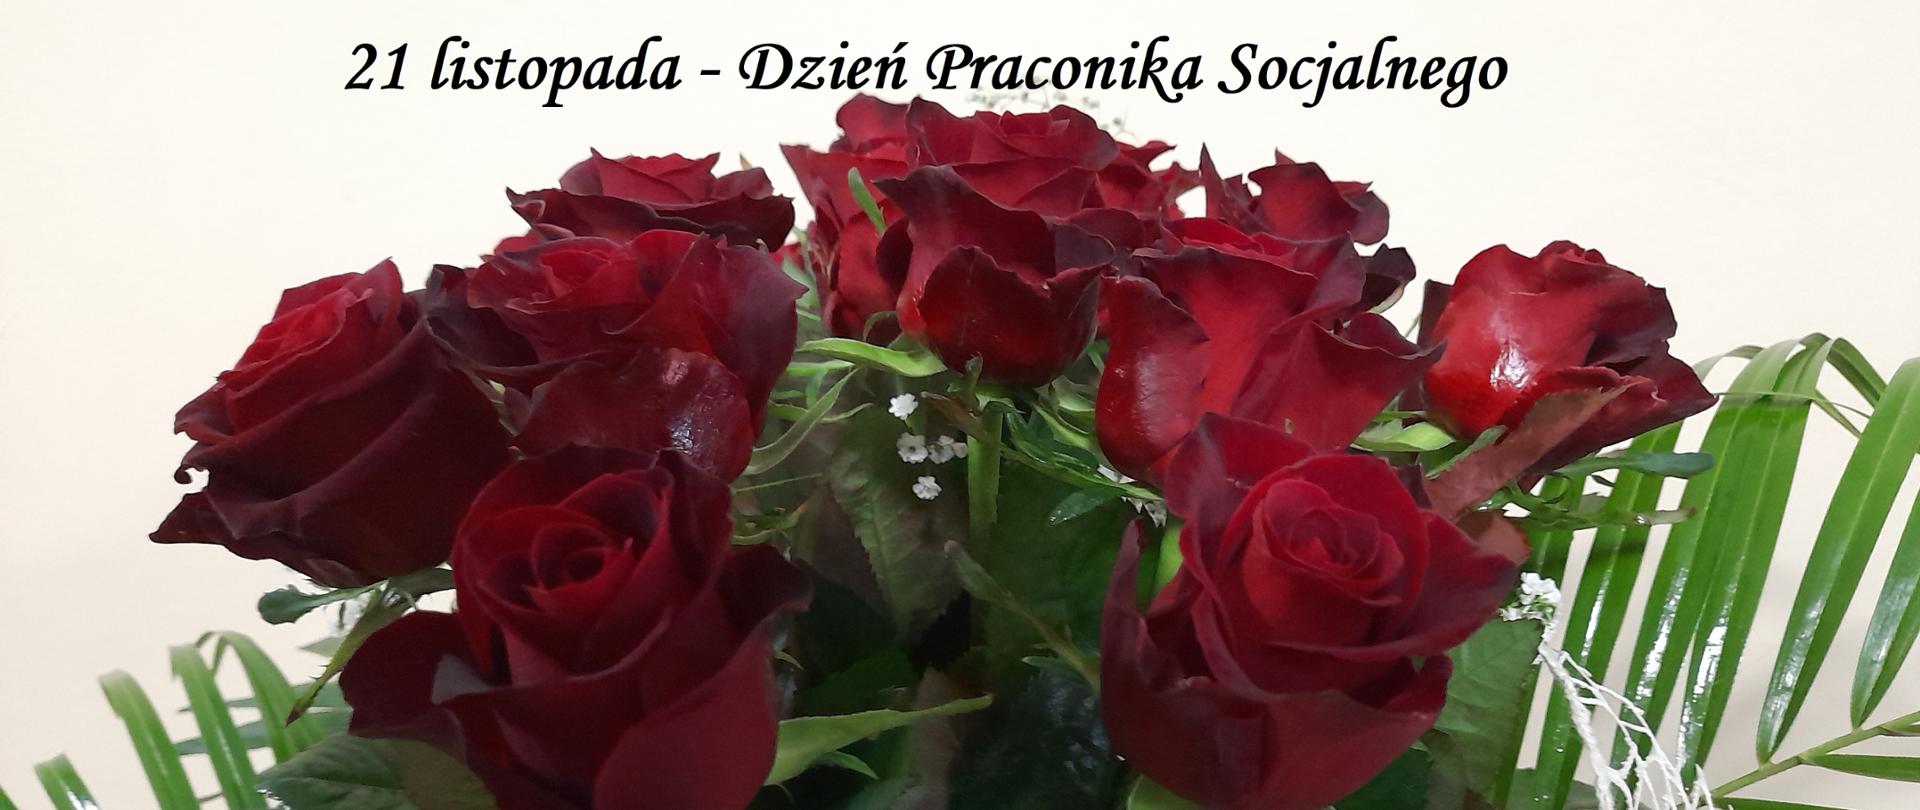 Bukiet czerwonych róż. Podpis: 21 listopada - Dzień Pracownika Socjalnego